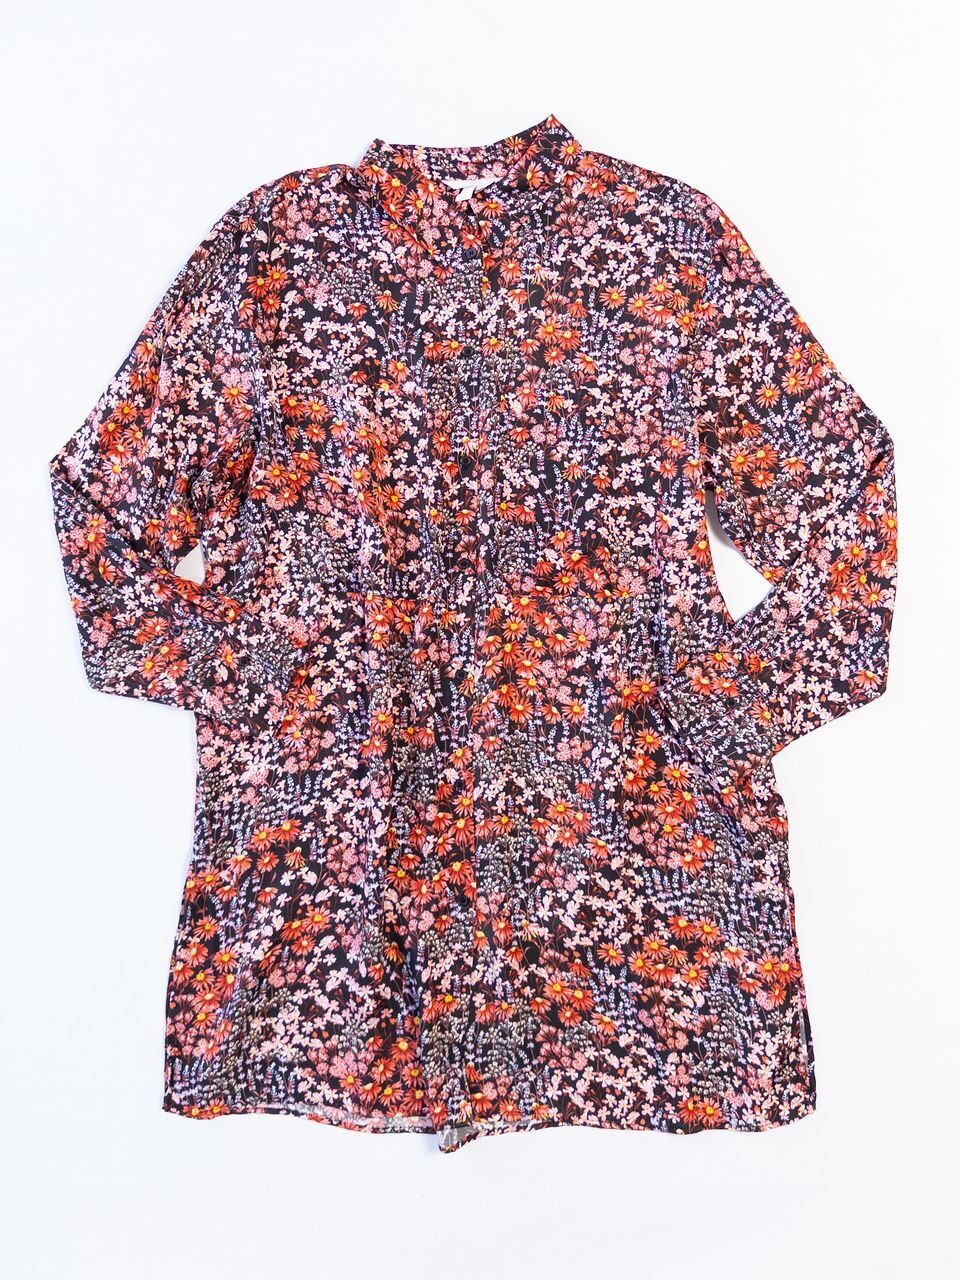 Свободная блуза из вискозной ткани цвет черный/цветы размер EUR L (rus 50-52) H&M